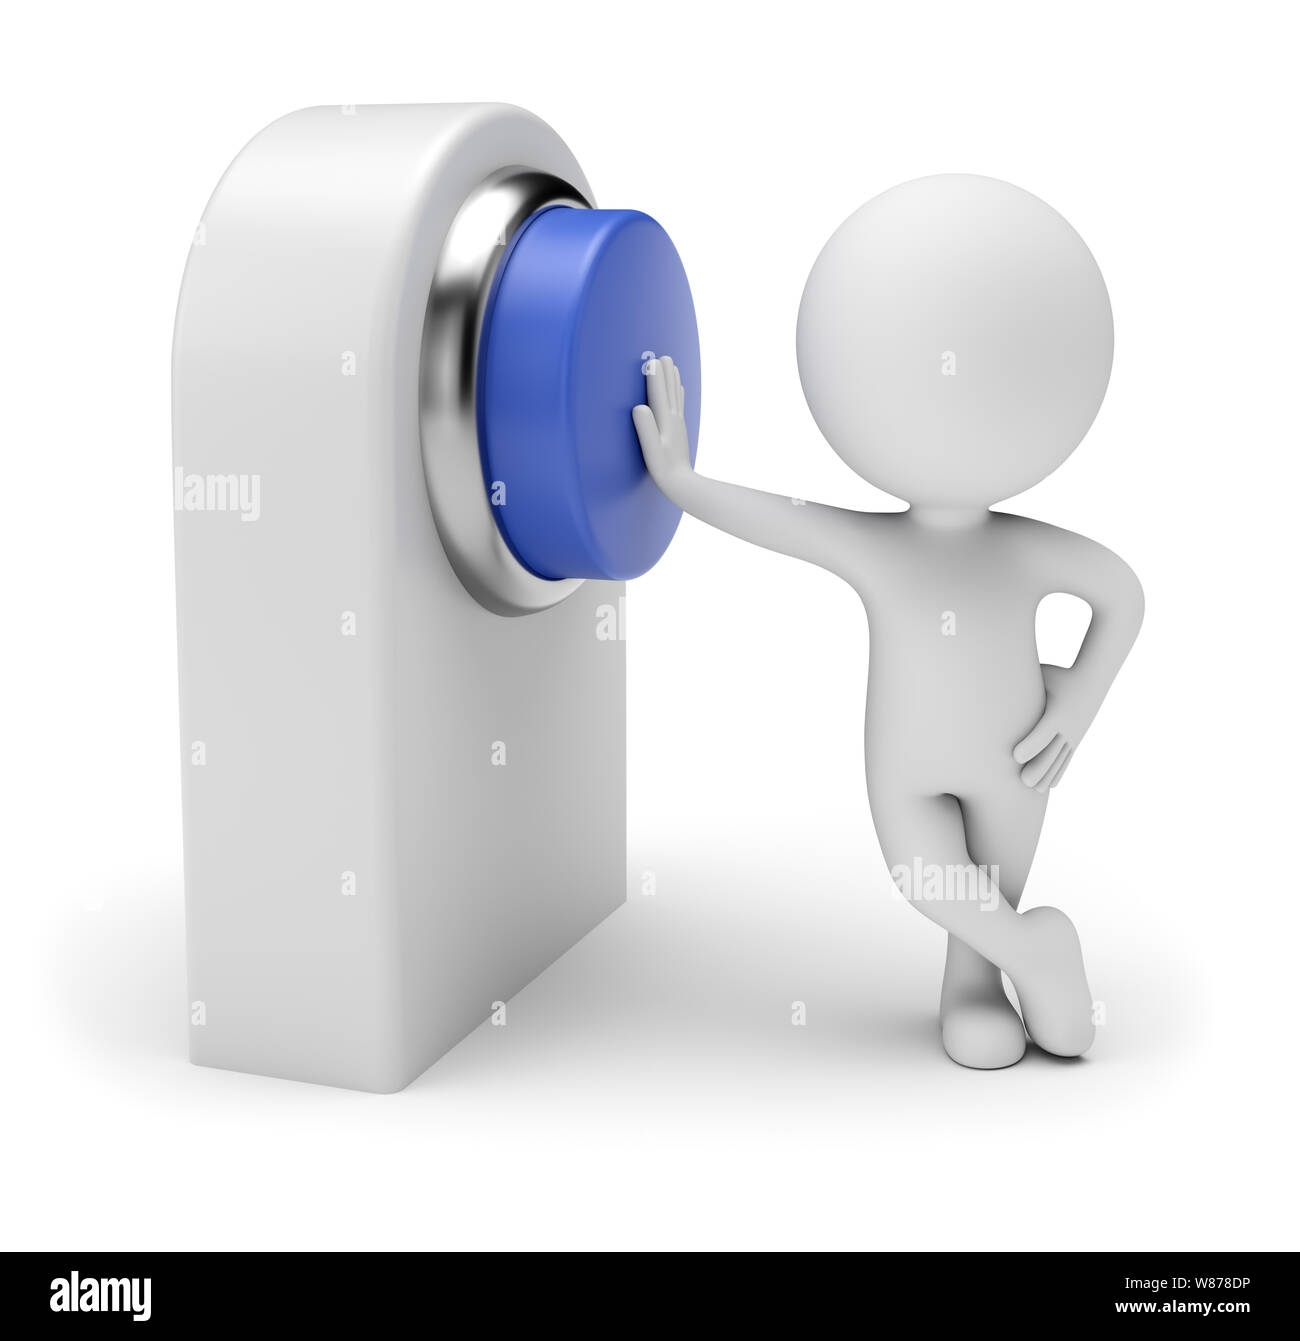 Gente pequeña 3d - Presionando el botón azul en la tarjeta de control. 3D rendering. Aislado sobre fondo blanco. Foto de stock